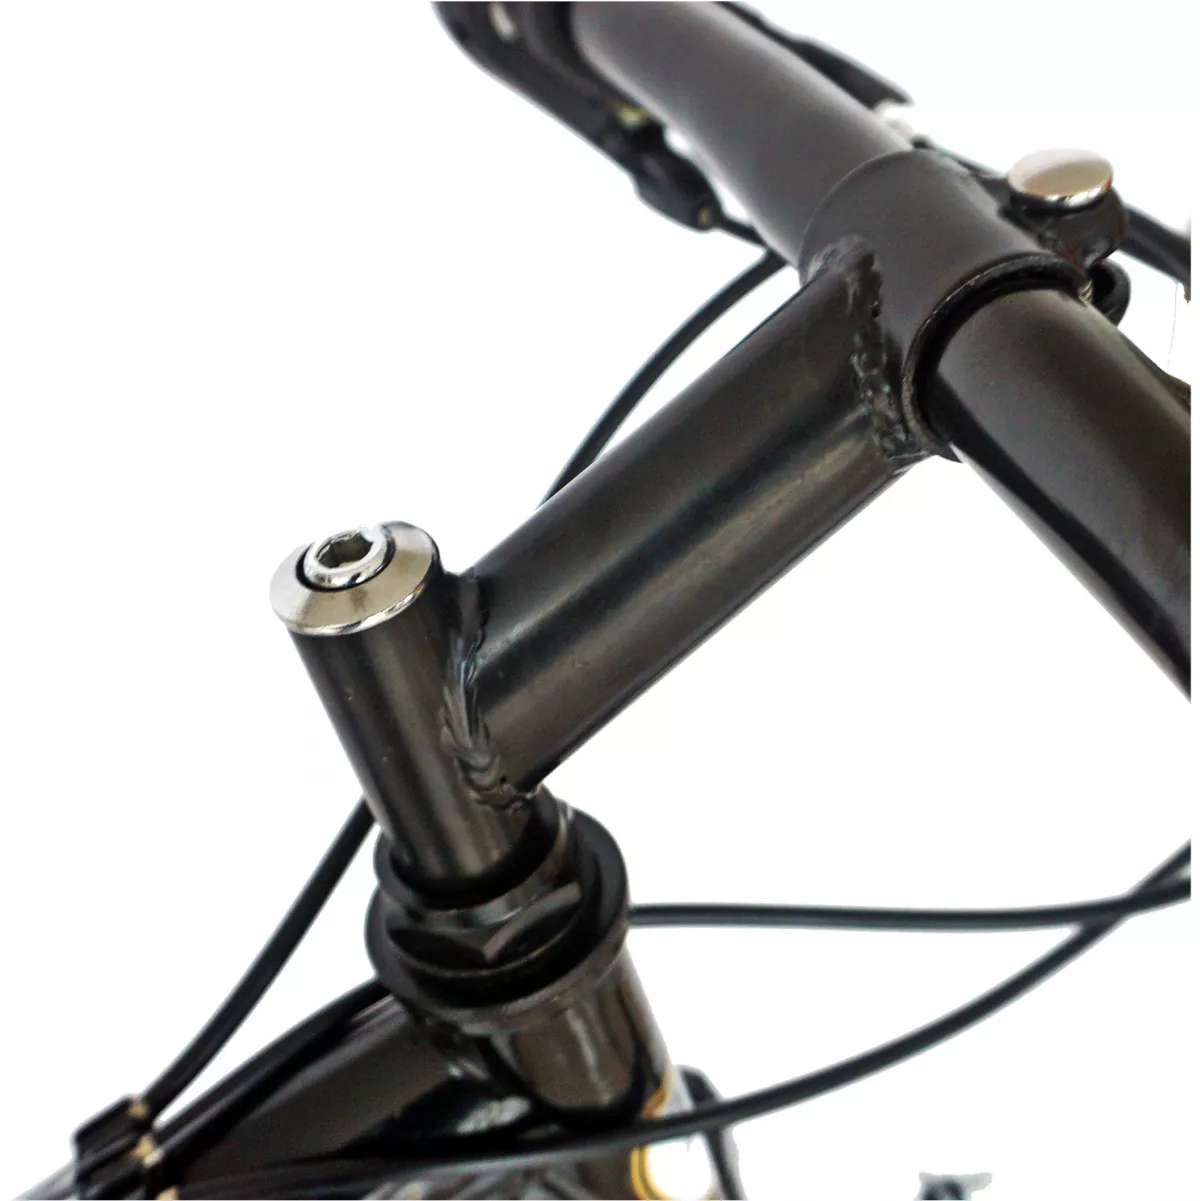 Bicicleta MTB-FS  24" RICH Alpin R2449A, 18 viteze, culoare  negru/portocaliu